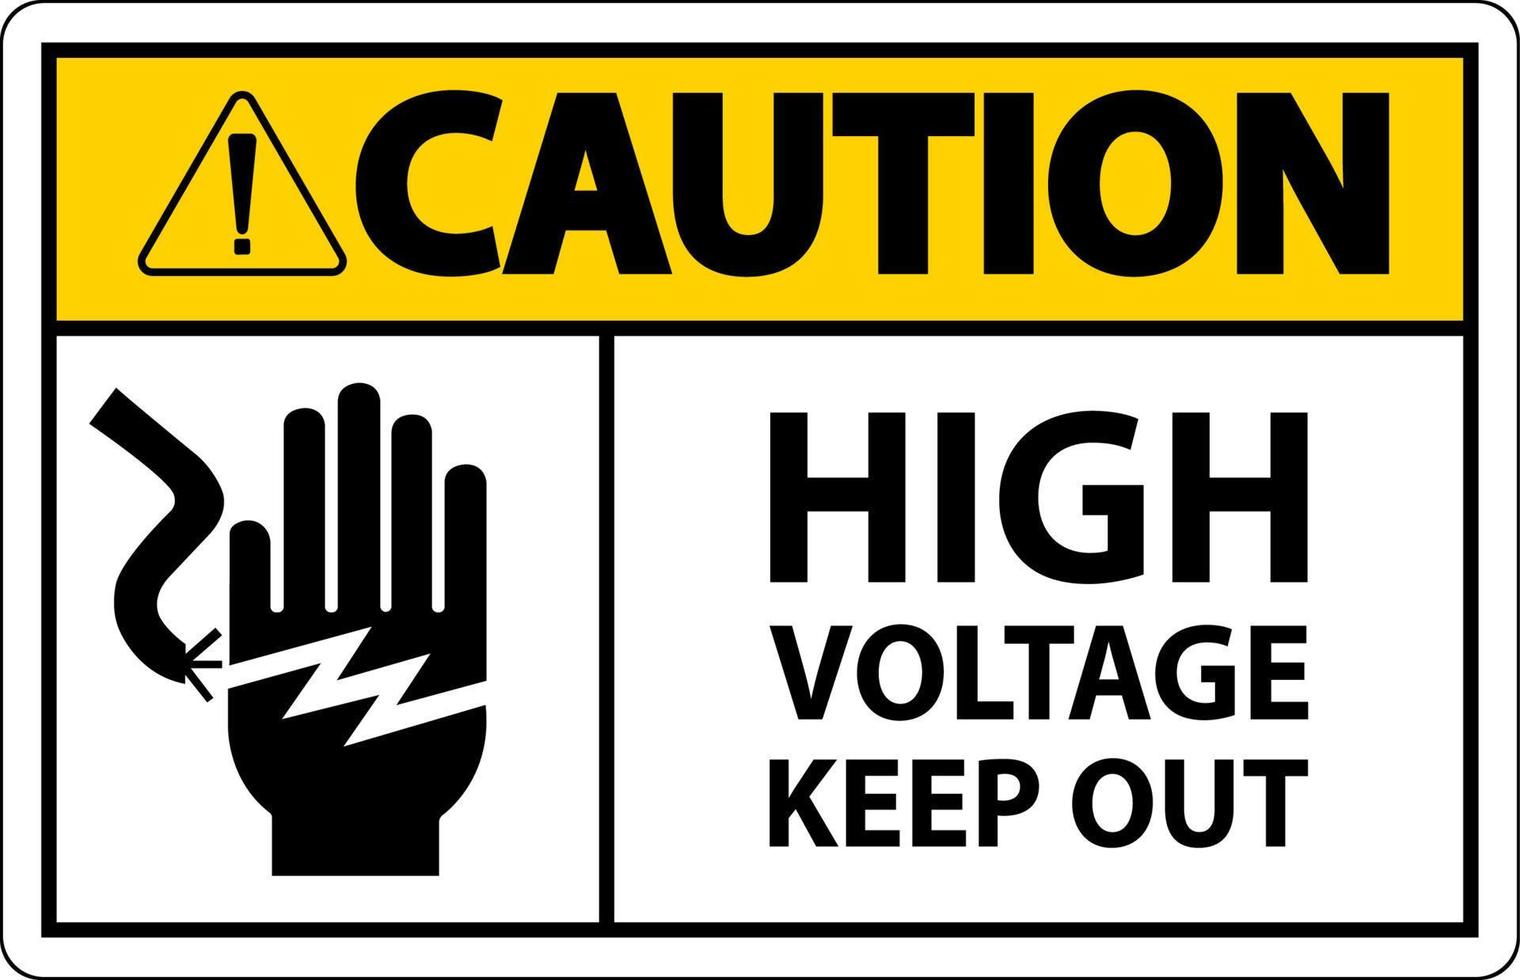 Precaución alto voltaje mantener fuera signo sobre fondo blanco. vector